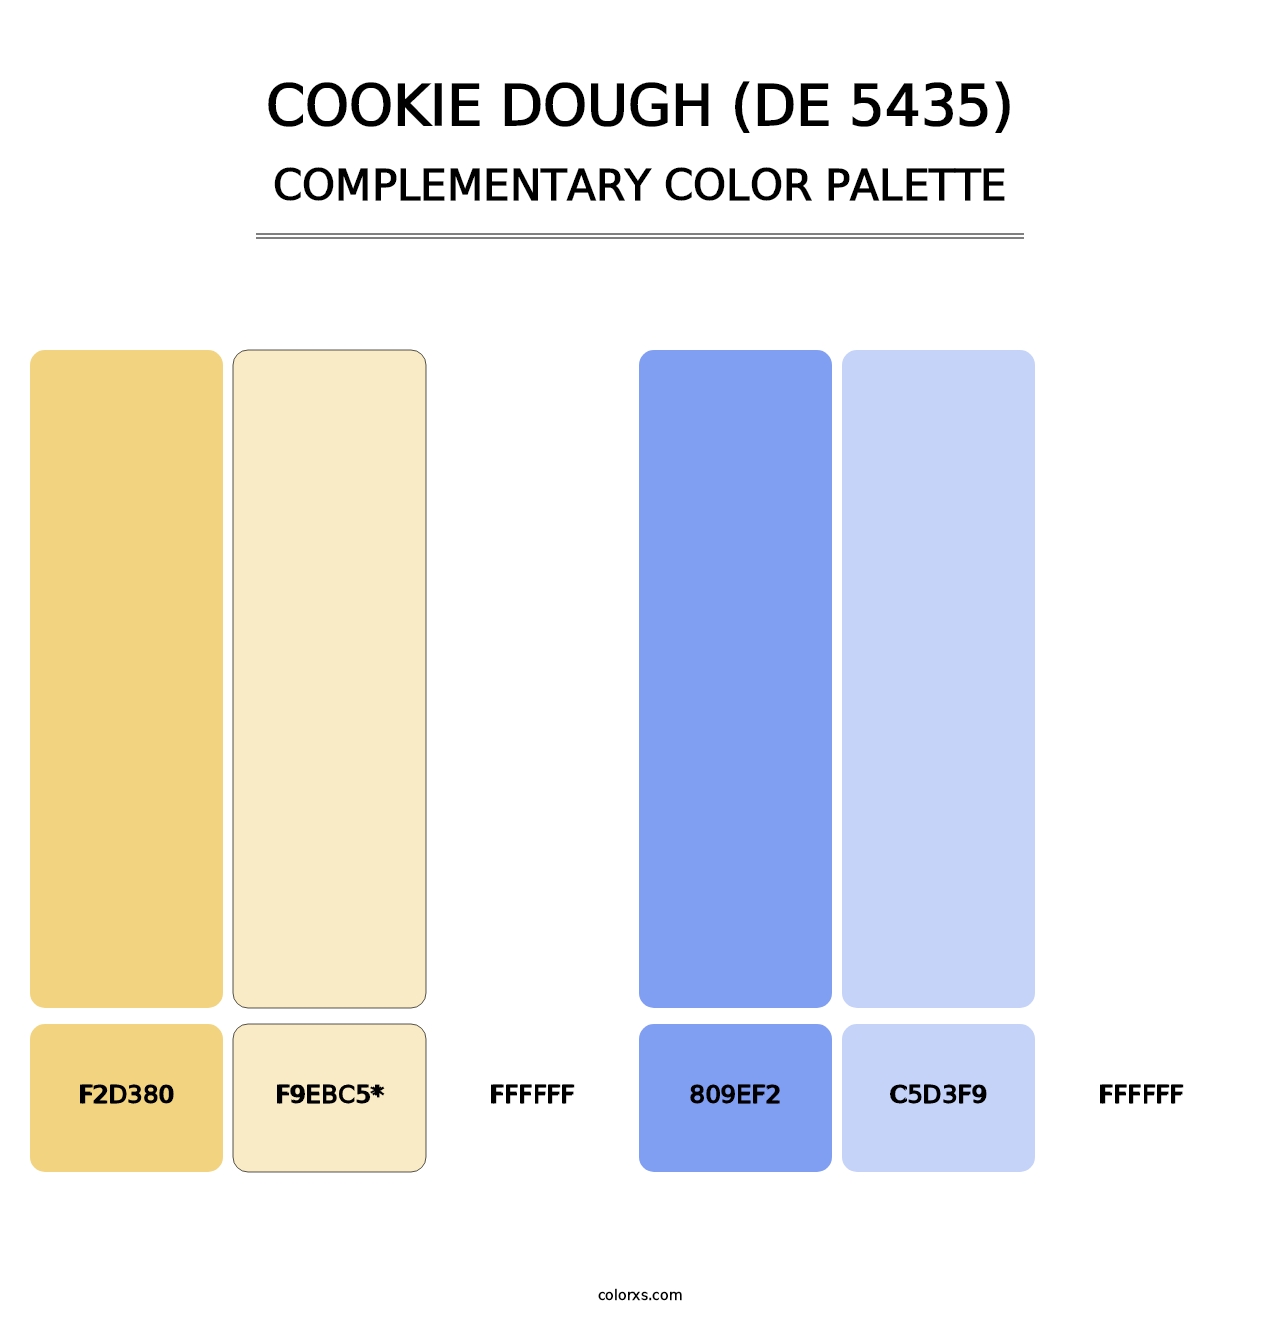 Cookie Dough (DE 5435) - Complementary Color Palette